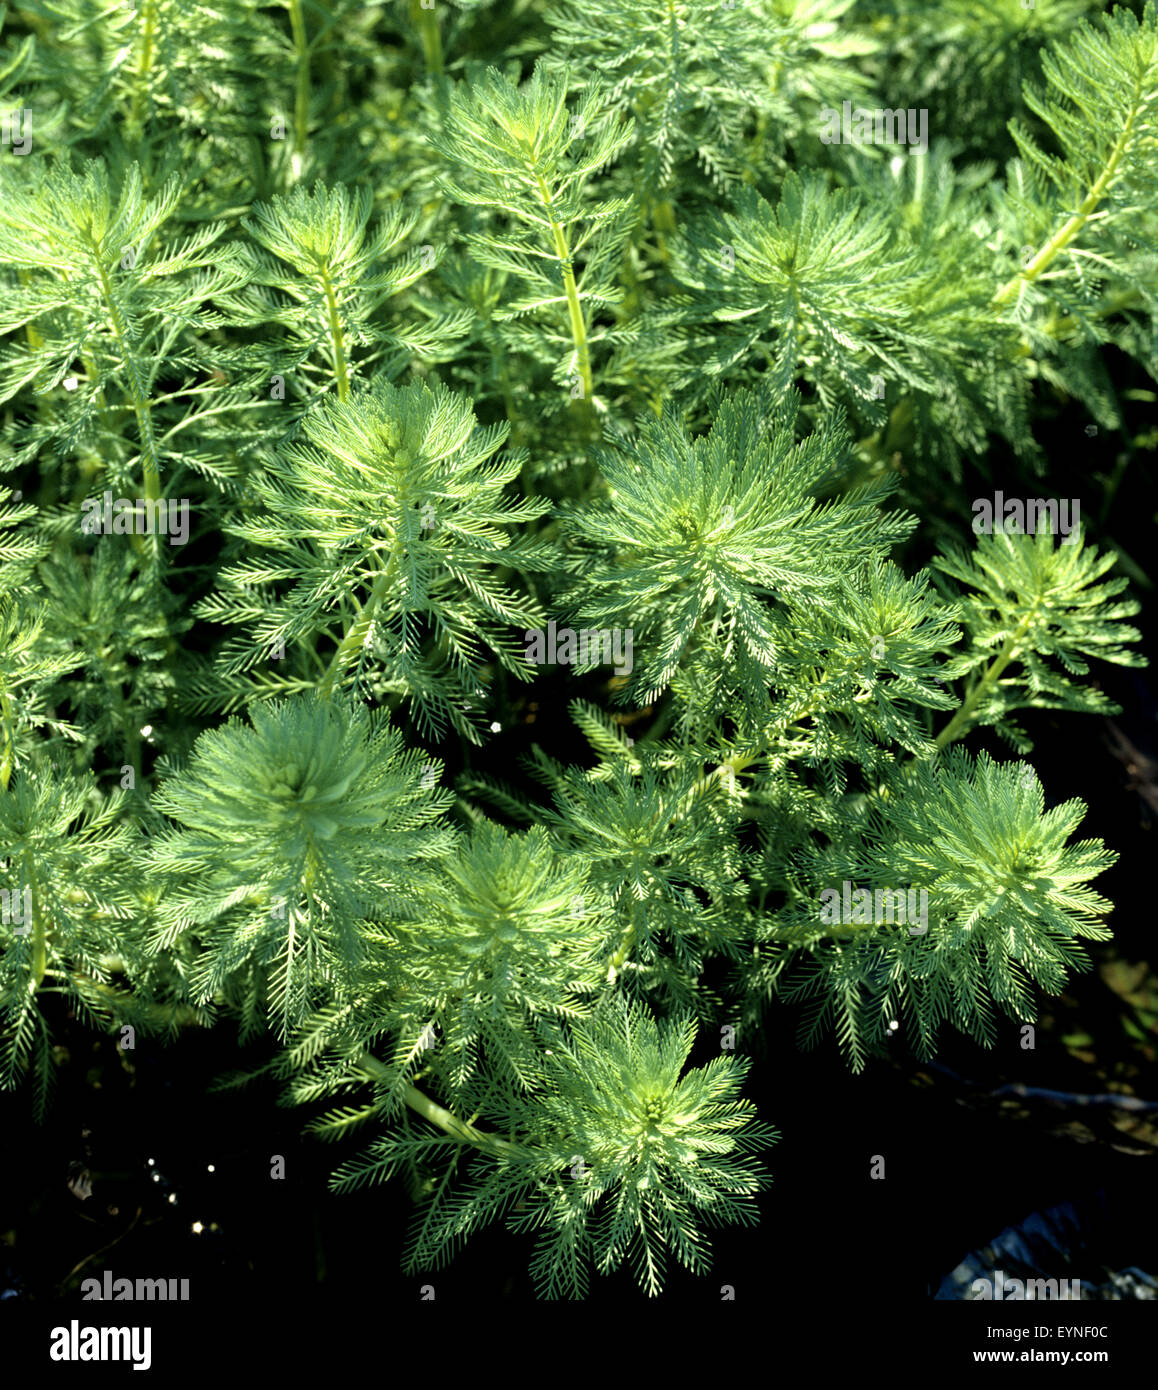 Tausendblatt, Myriophyllum aquaticum, Suesswasserpflanze, Wasserpflanzen Stock Photo